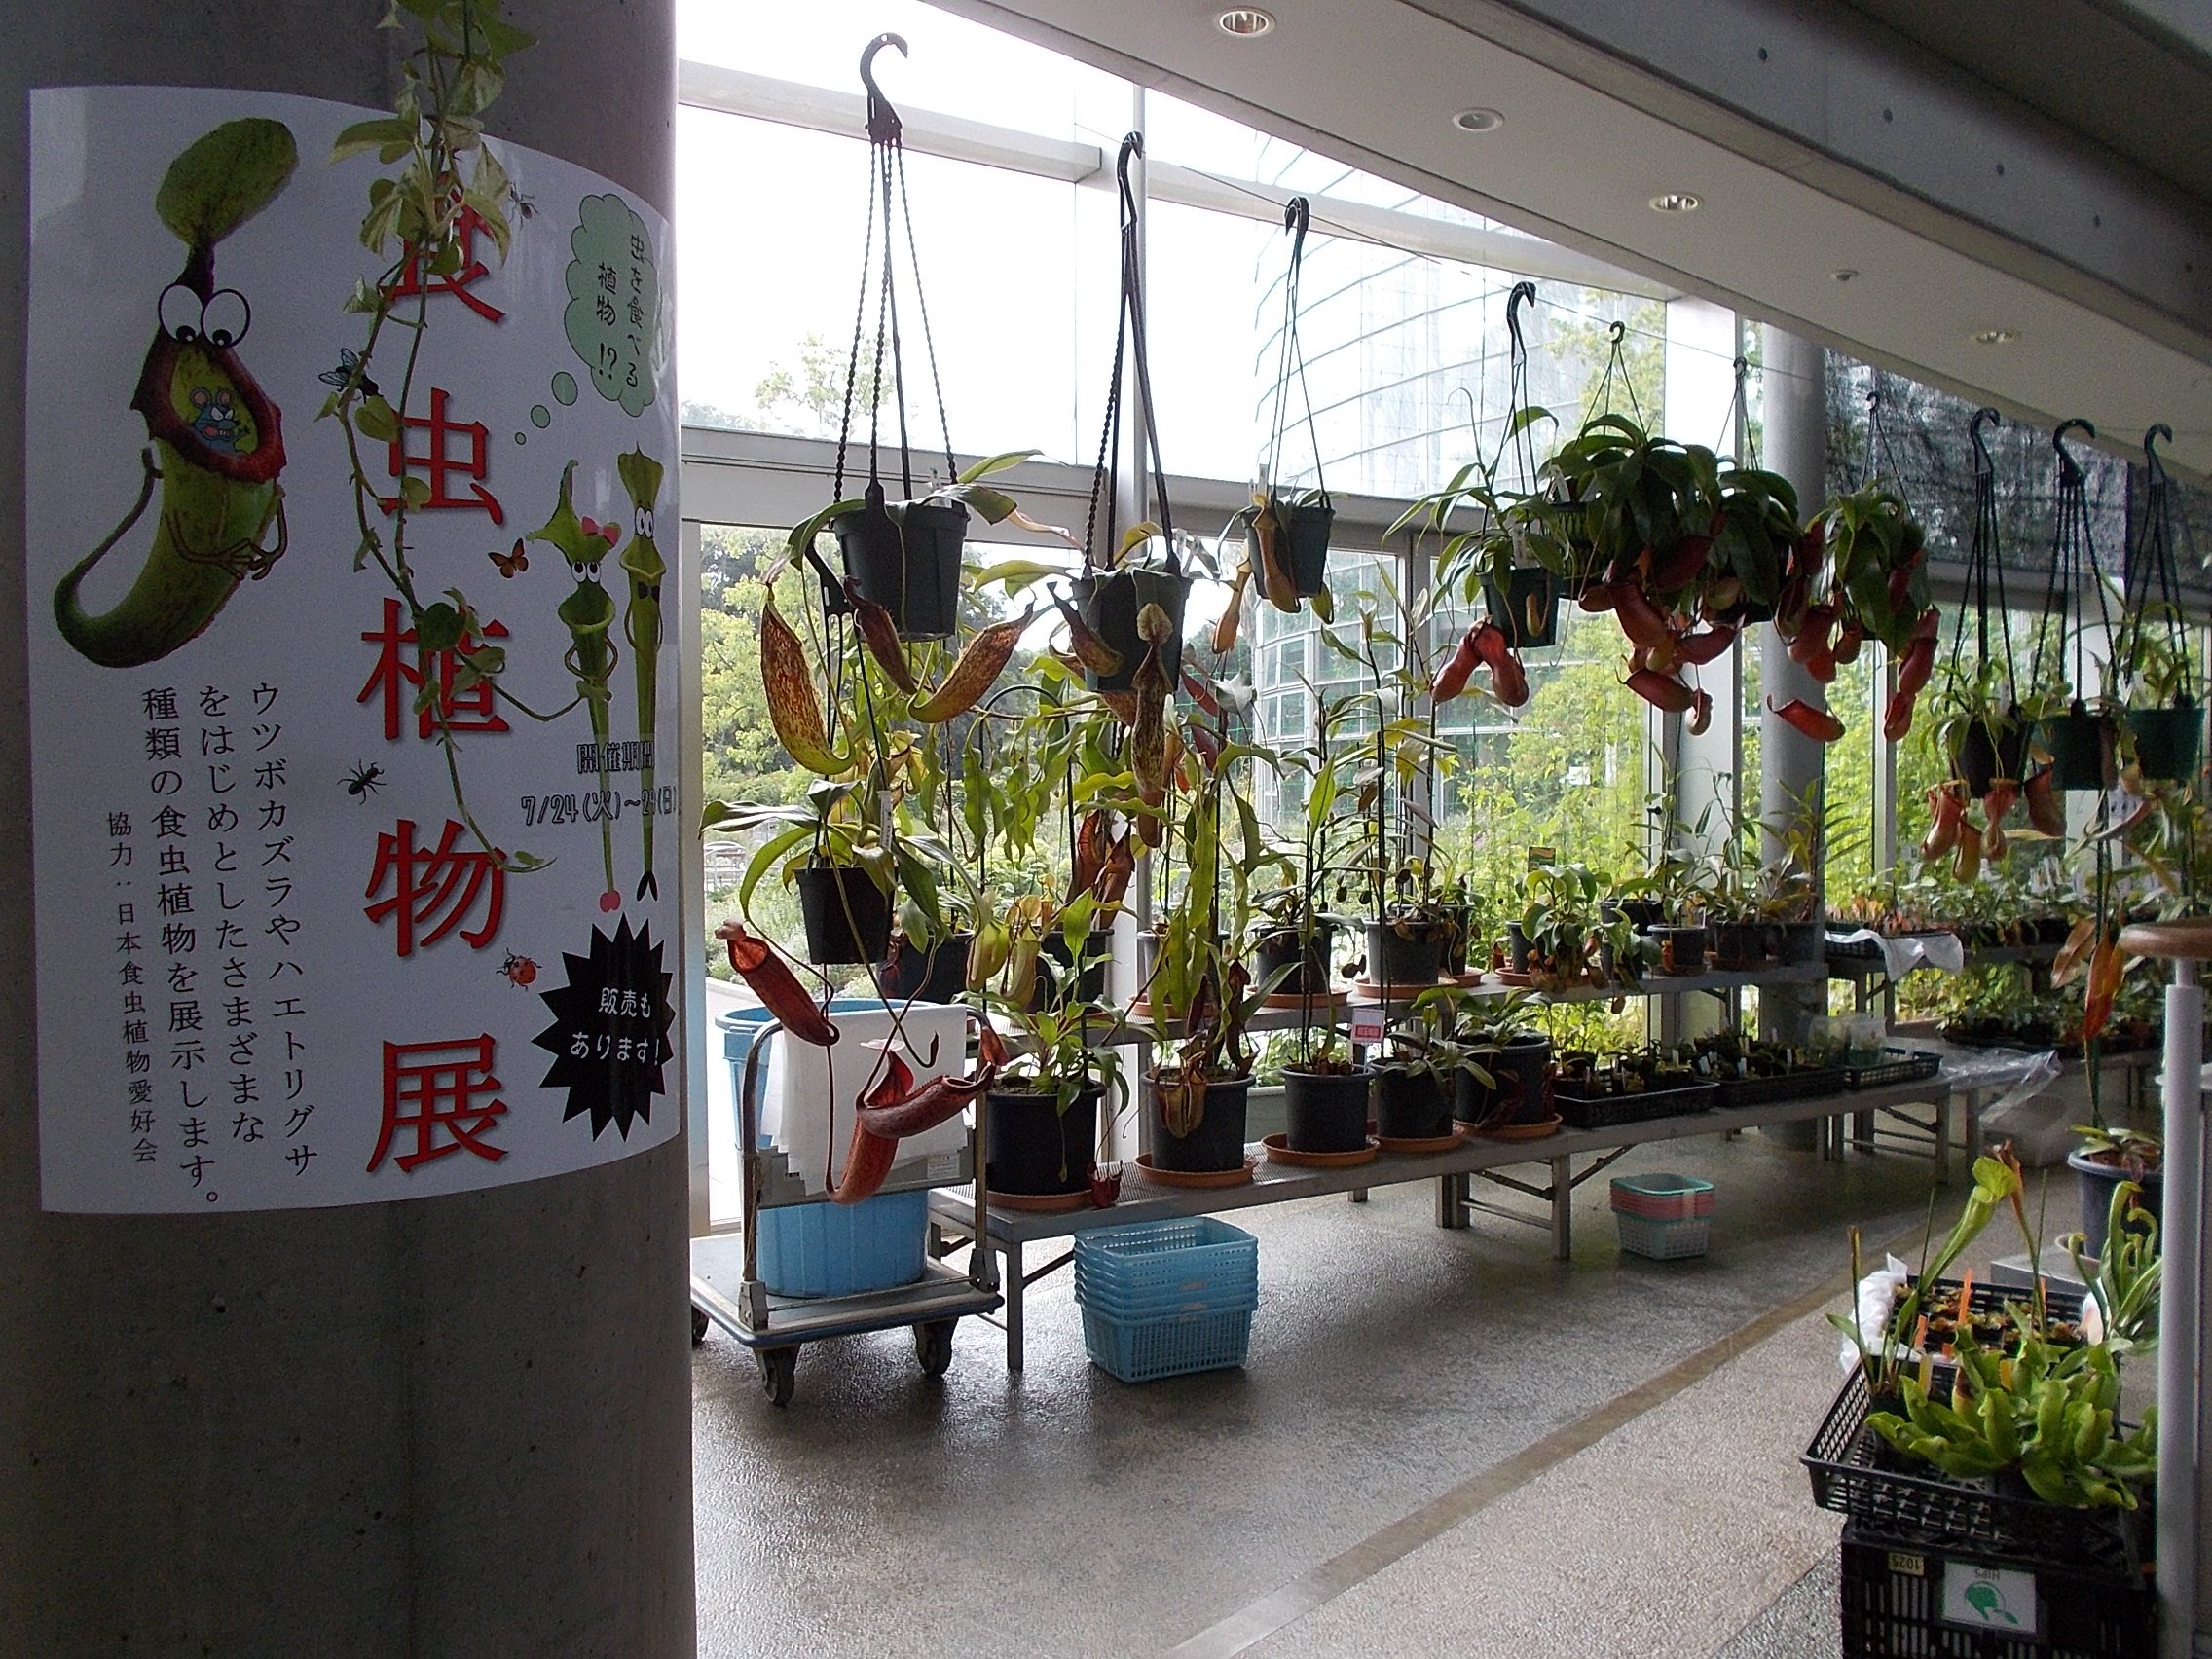 千葉市花の美術館 7月29日まで アトリウムで 食虫植物展 を開催しております 協力 日本食虫植物愛好会 Jcpstanabe 普段 当館では見られない ウツボカズラ ハエトリソウ モウセンゴケなどをはじめとした様々な種類の